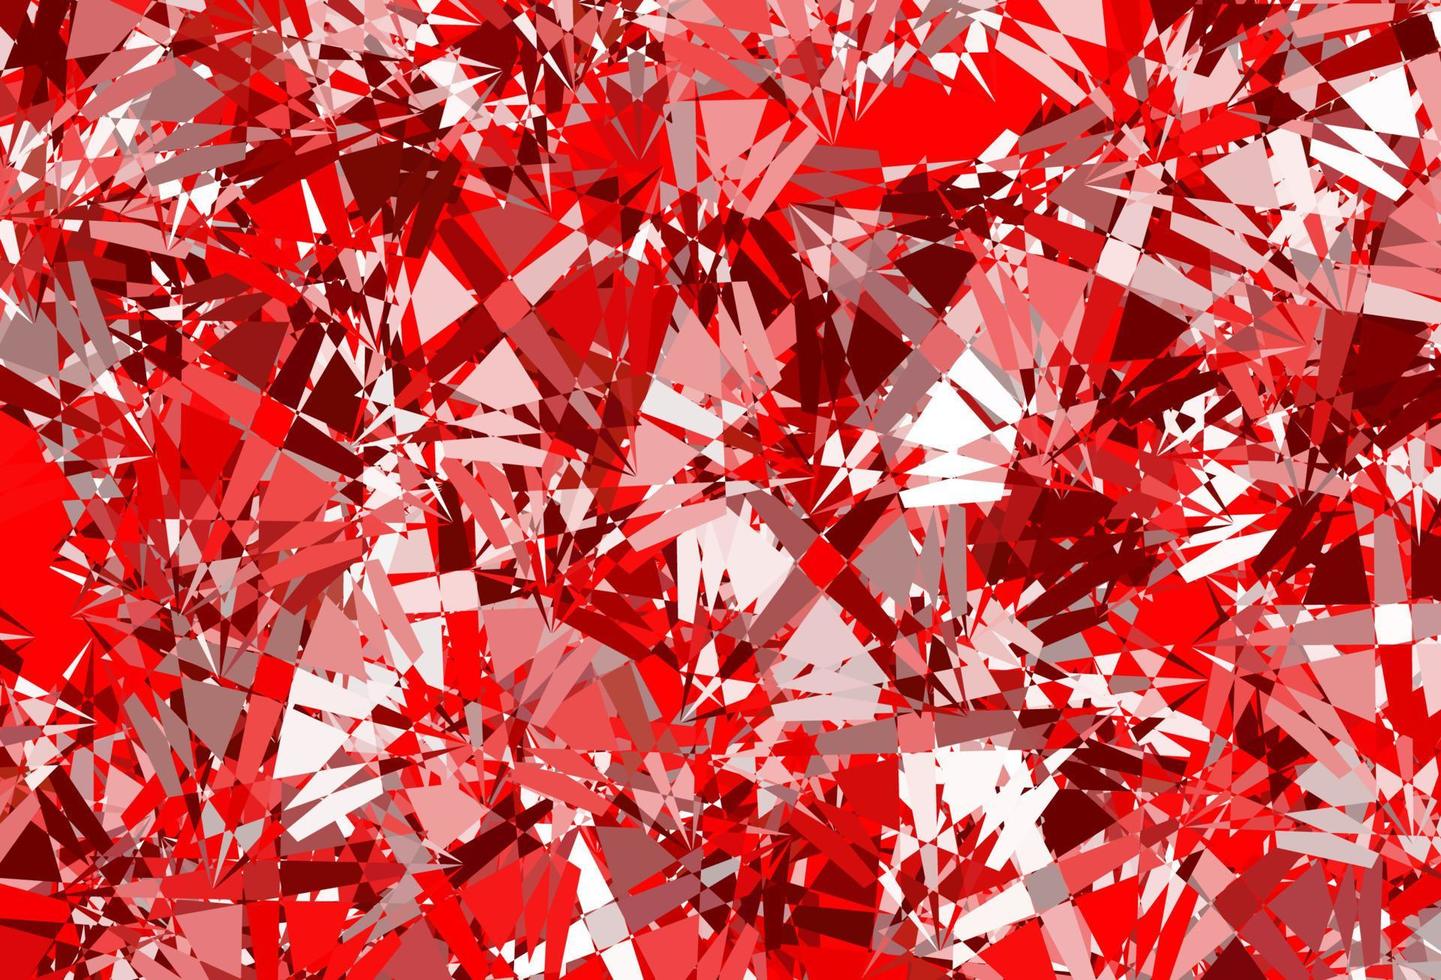 mörk röd vektor bakgrund med polygonala former.